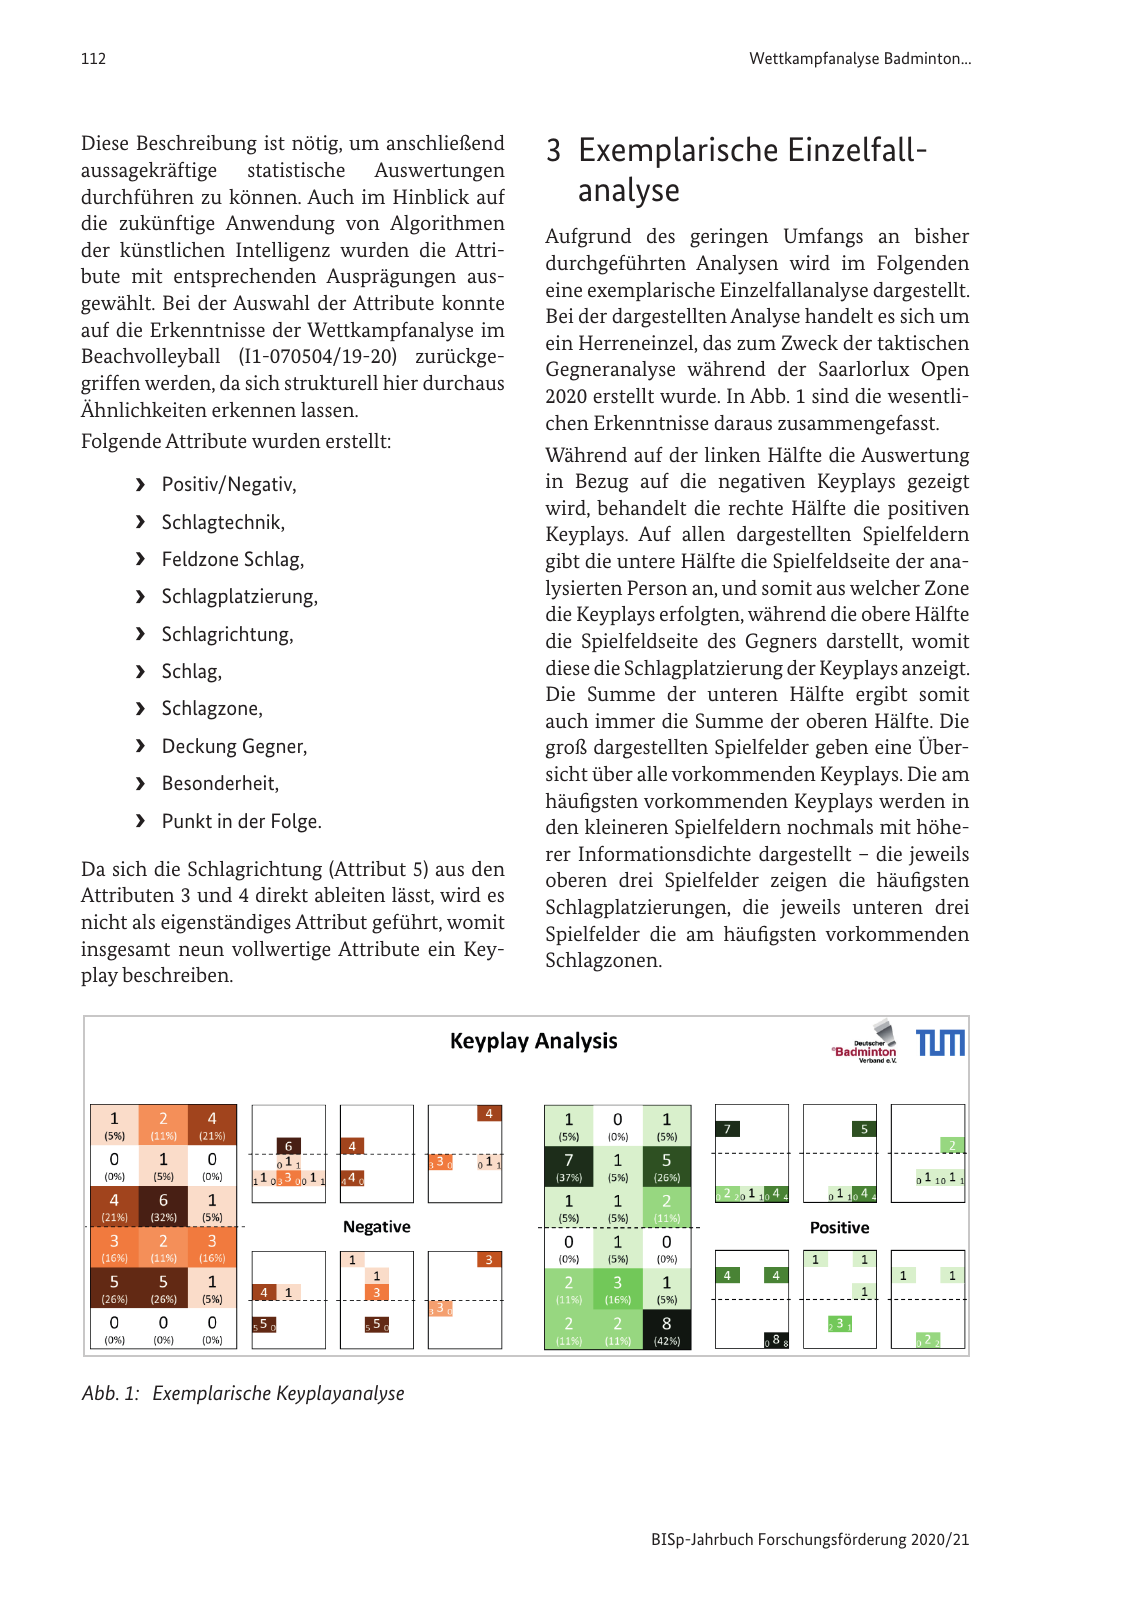 Vorschau BISp-Jahrbuch 2020/21 Seite 114